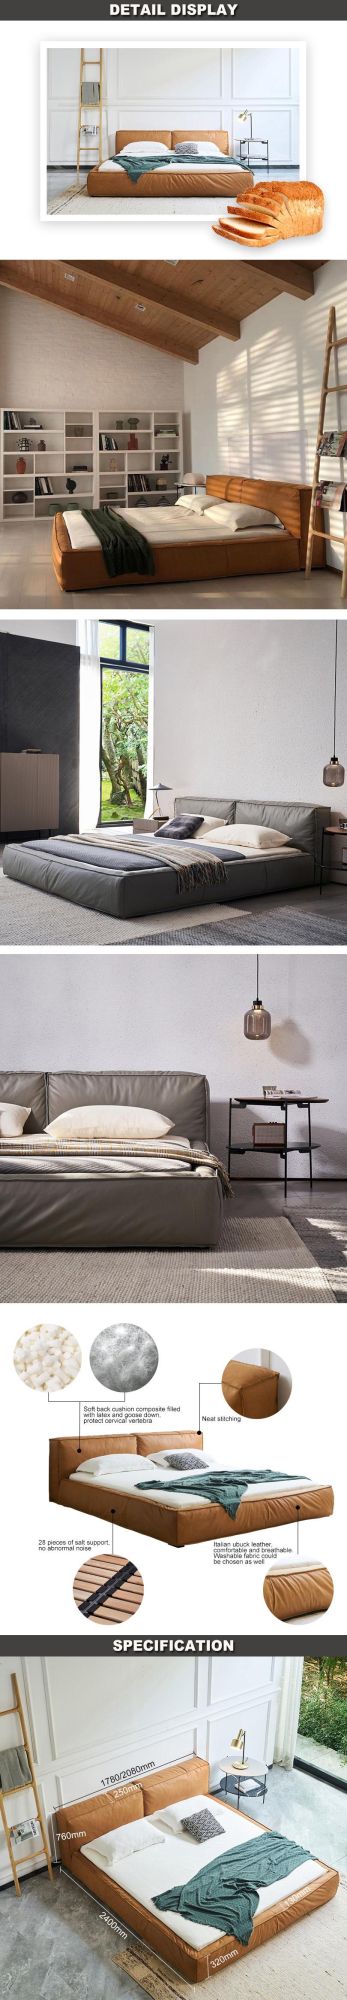 Modern Hotel Furniture Wood Frame King Size Bedroom Leather Bed